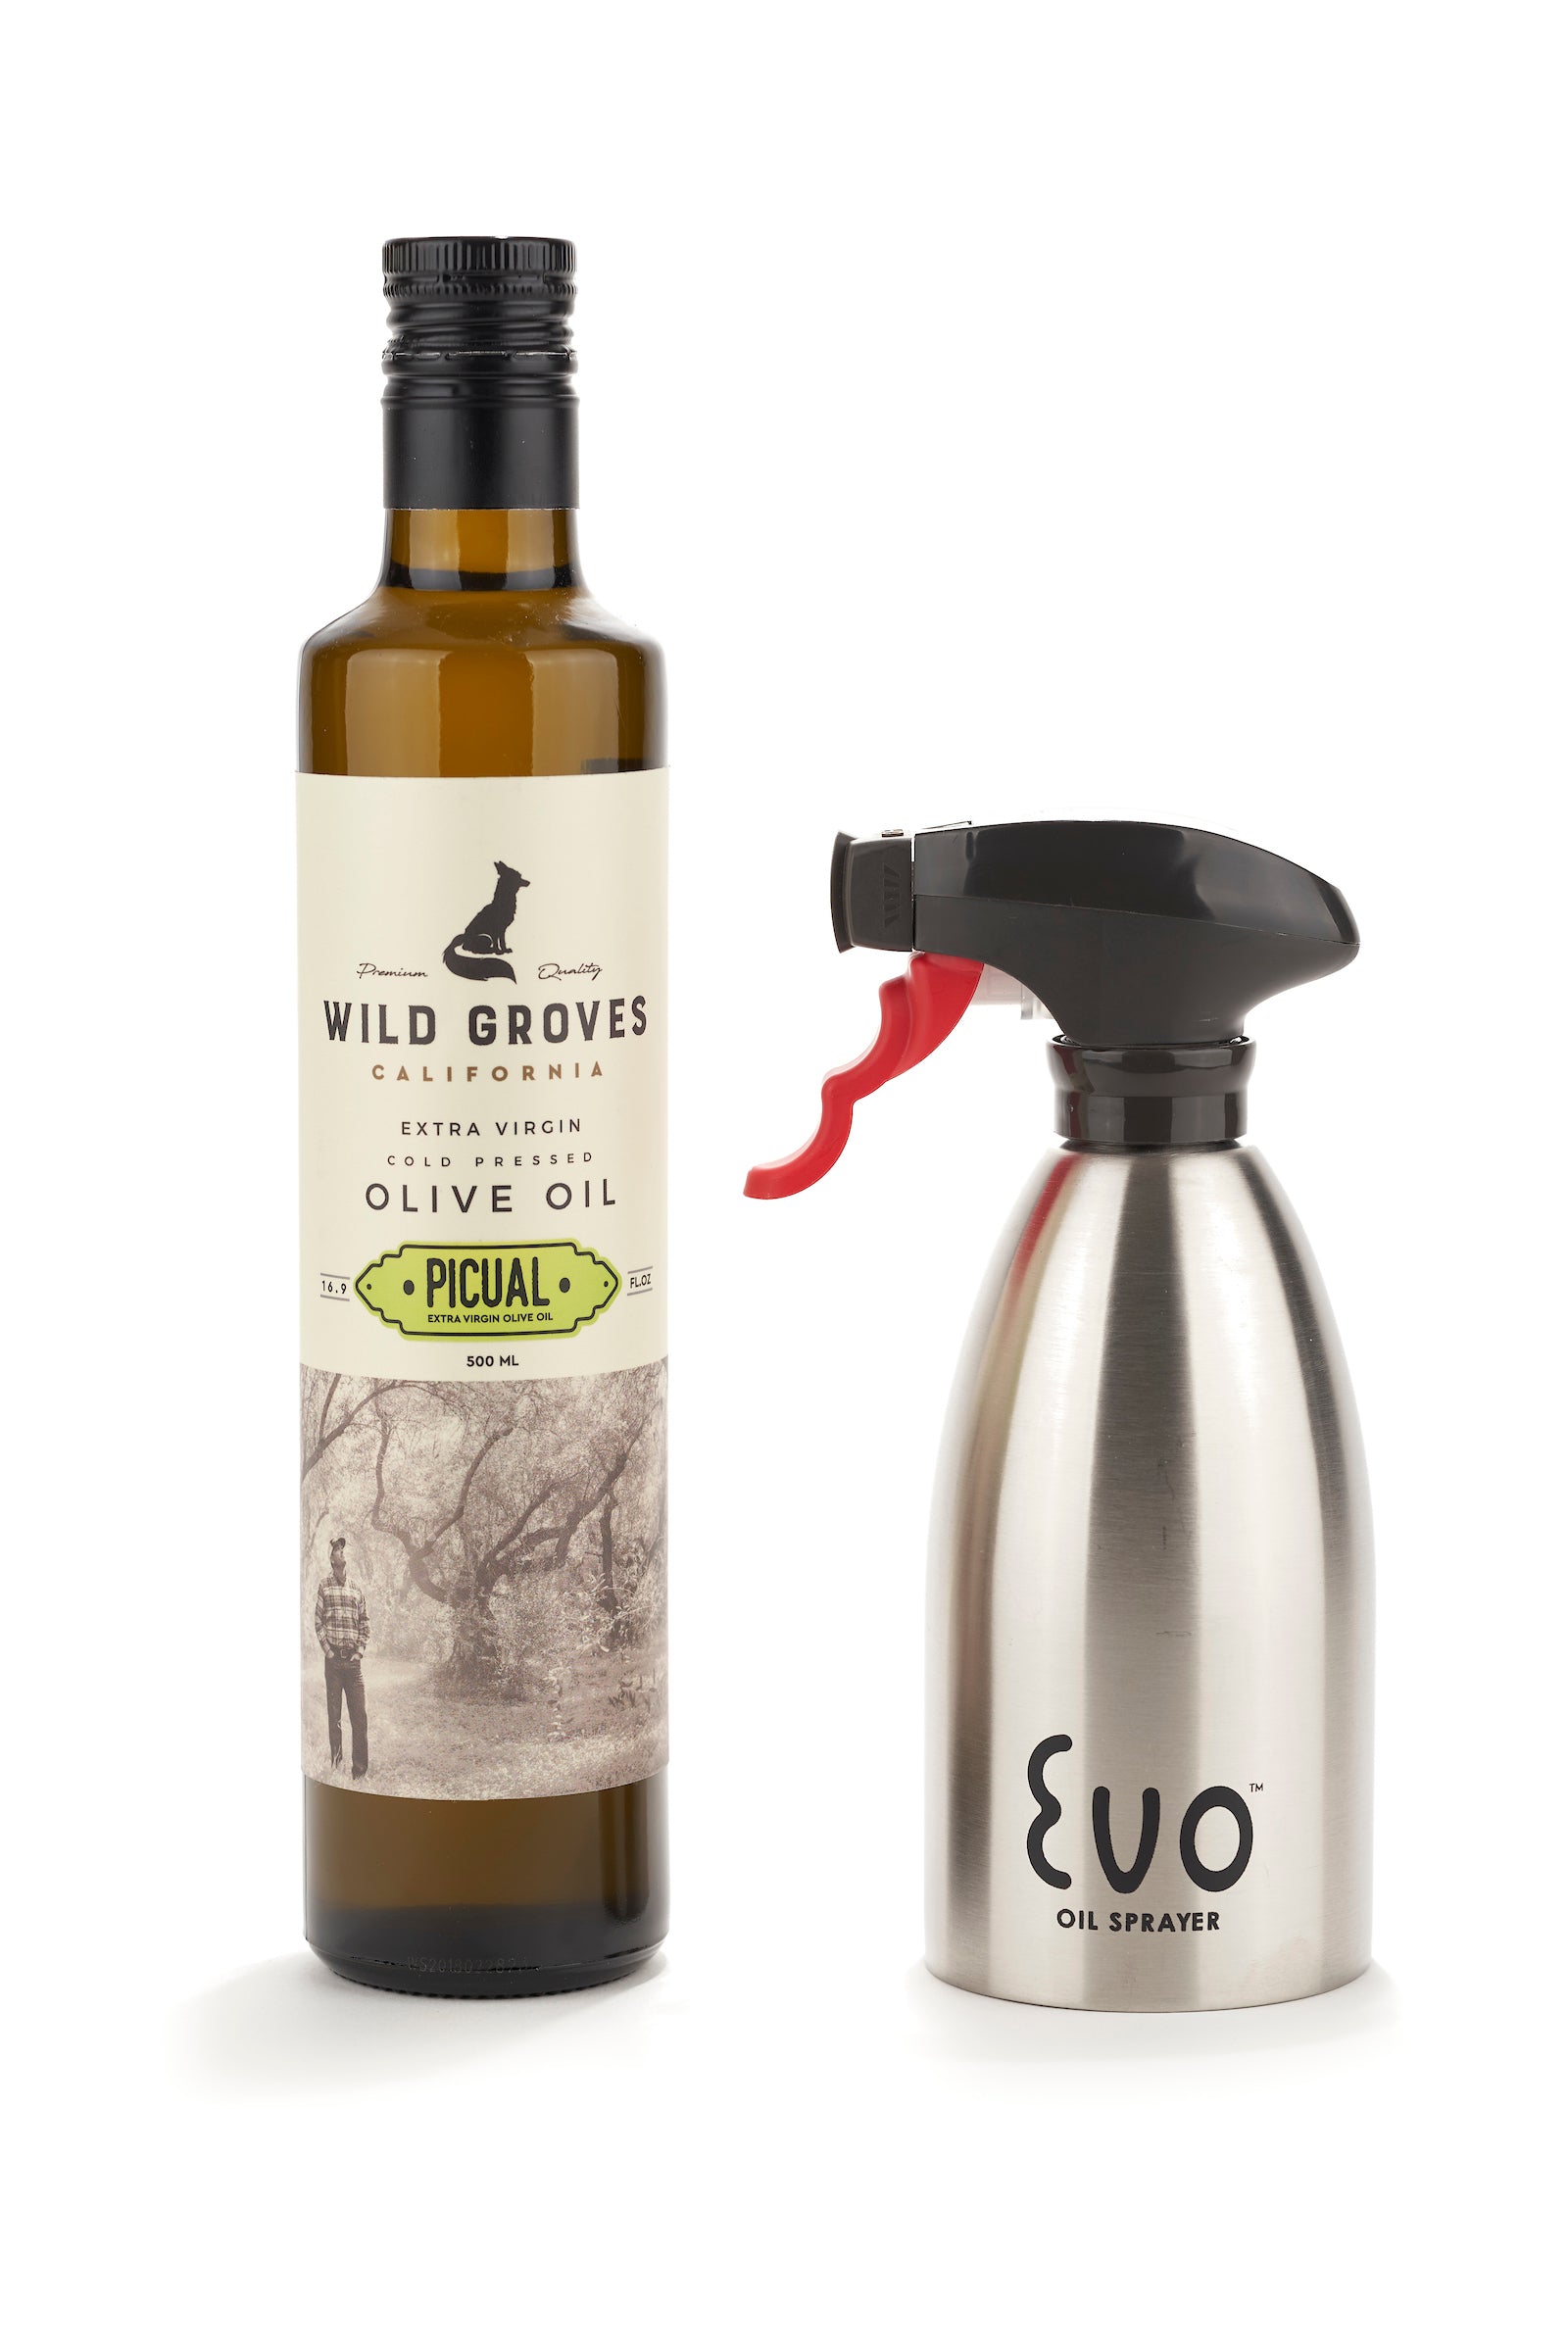 Olive Oil Sprayer – FIORE Artisan Olive Oils & Vinegars